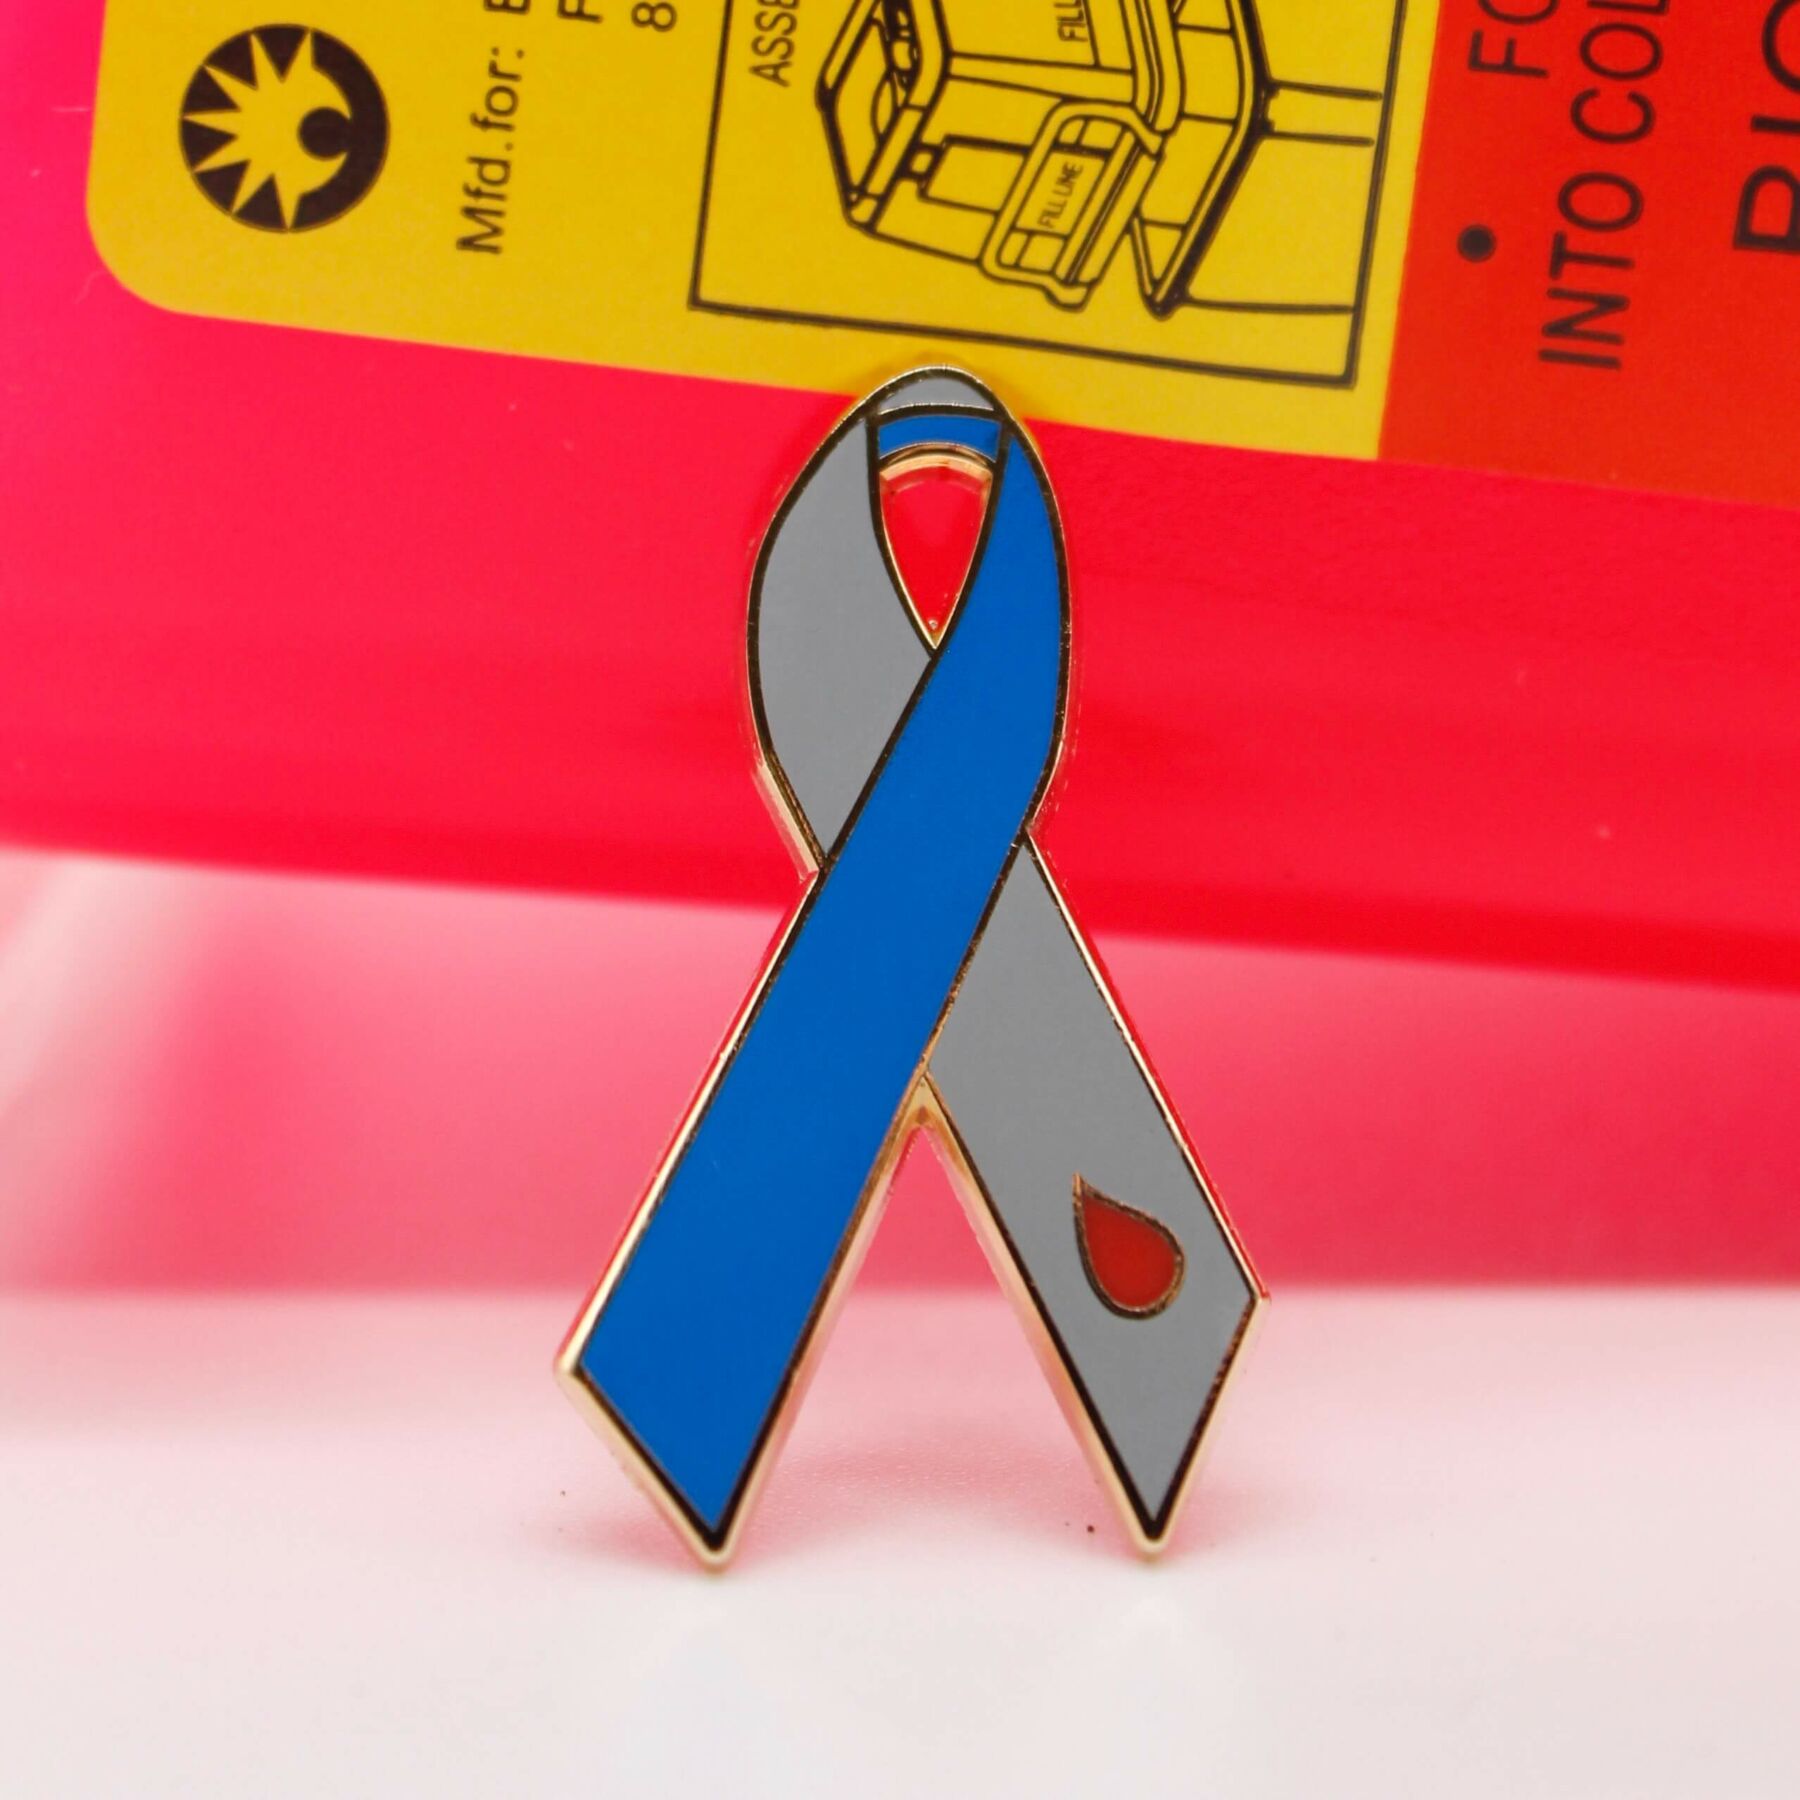 Bulk Satin Green Ribbon Pins for Mental Health, Organ Donation